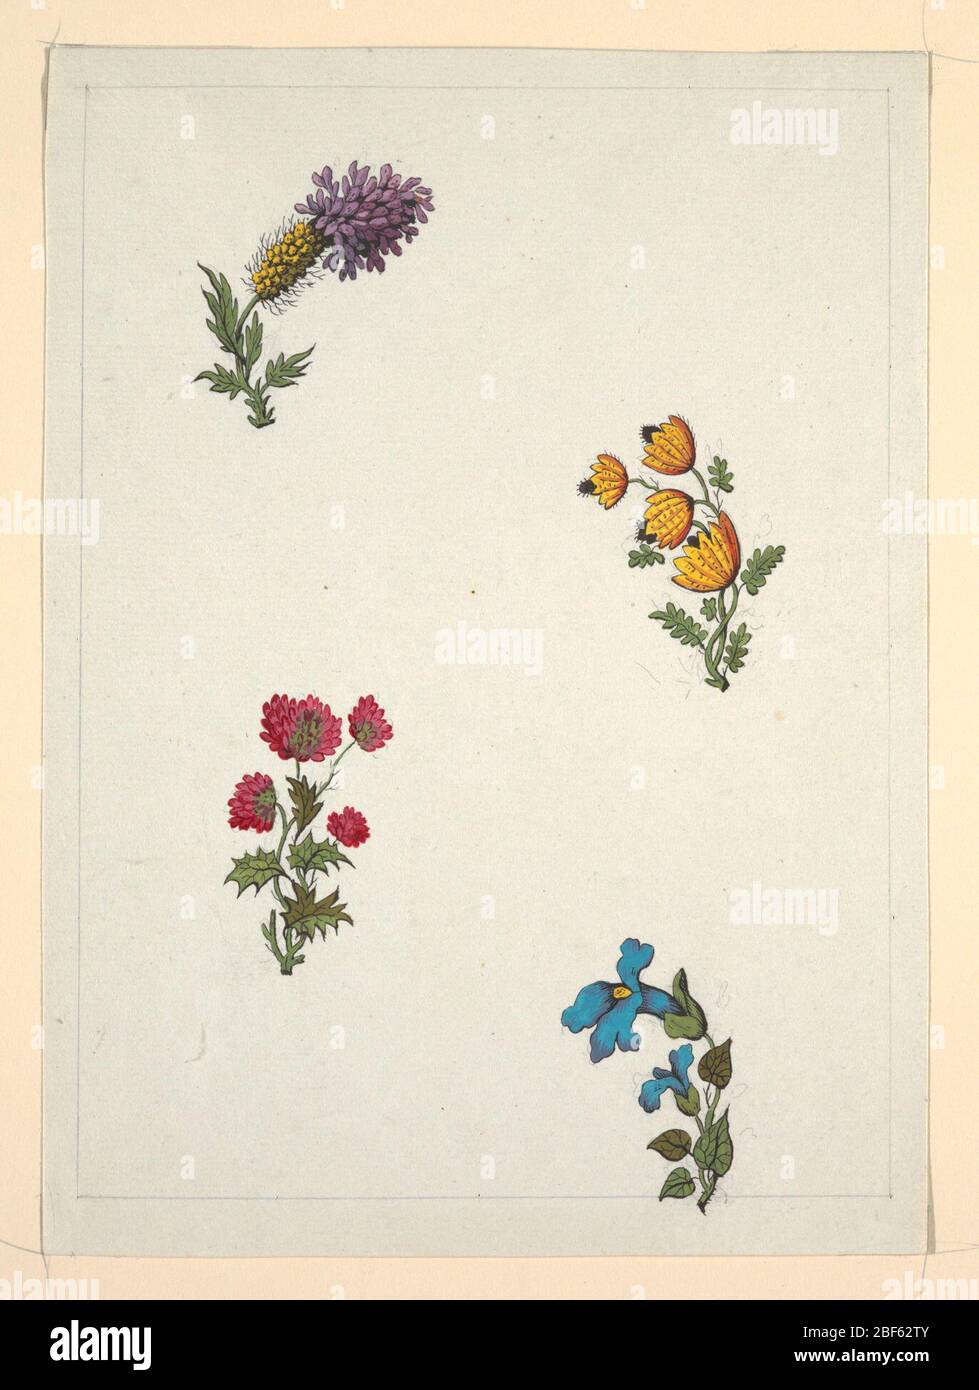 Dessin. Fleur en haut à gauche, fleur jaune et fleur violette; fleur en  haut à droite, quatre fleurs jaune et noire; fleur en dessous à gauche,  fleur en forme de trèfle rouge;